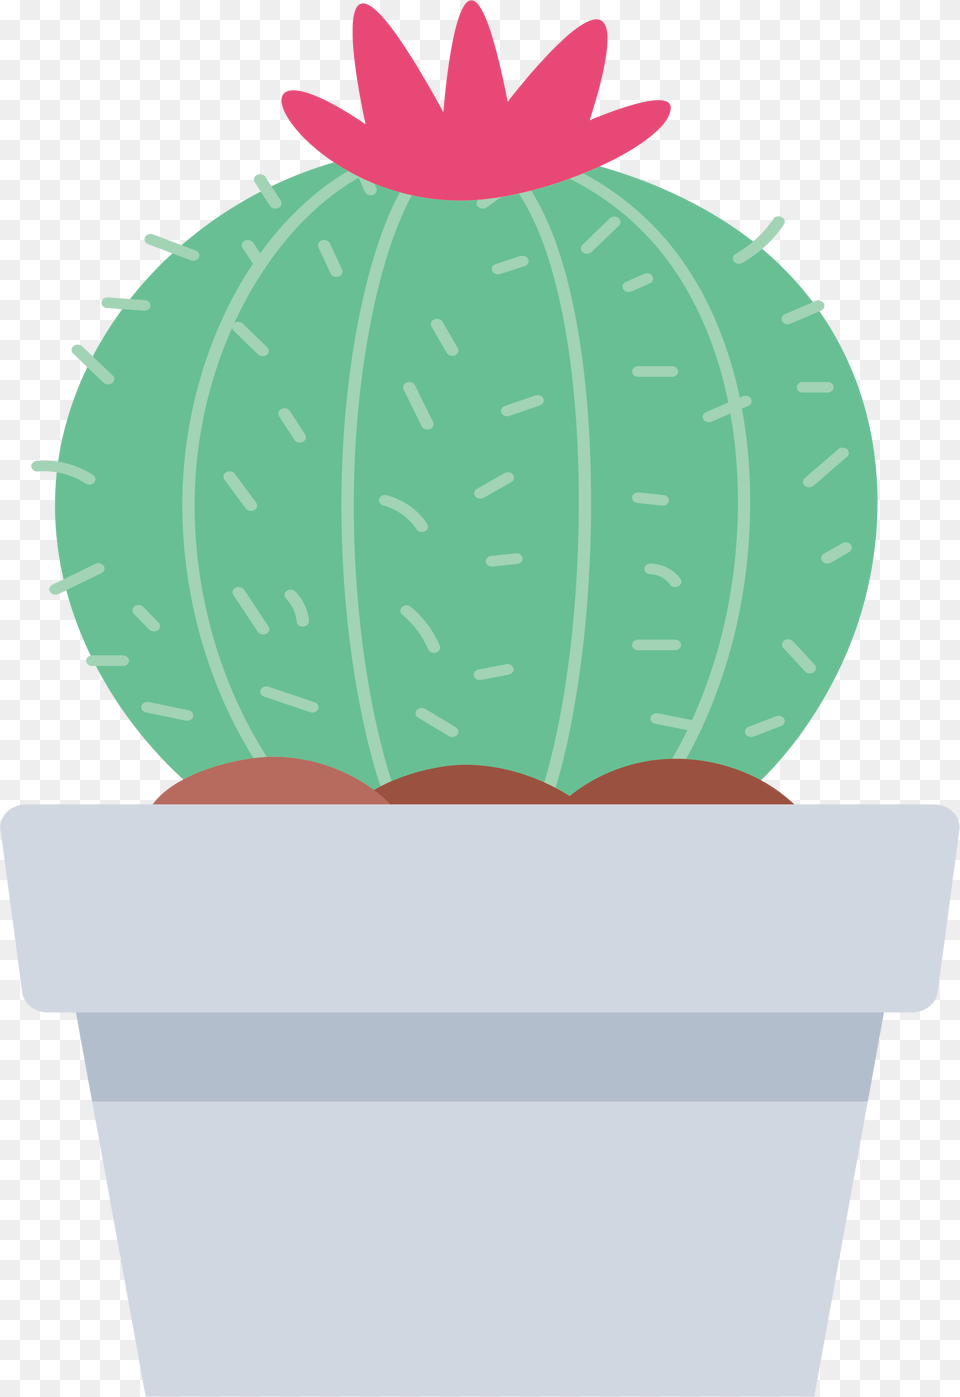 Cactaceae Euclidean Vector Clip Art Vector Cactus Transparente, Plant, Potted Plant, Ammunition, Grenade Png Image